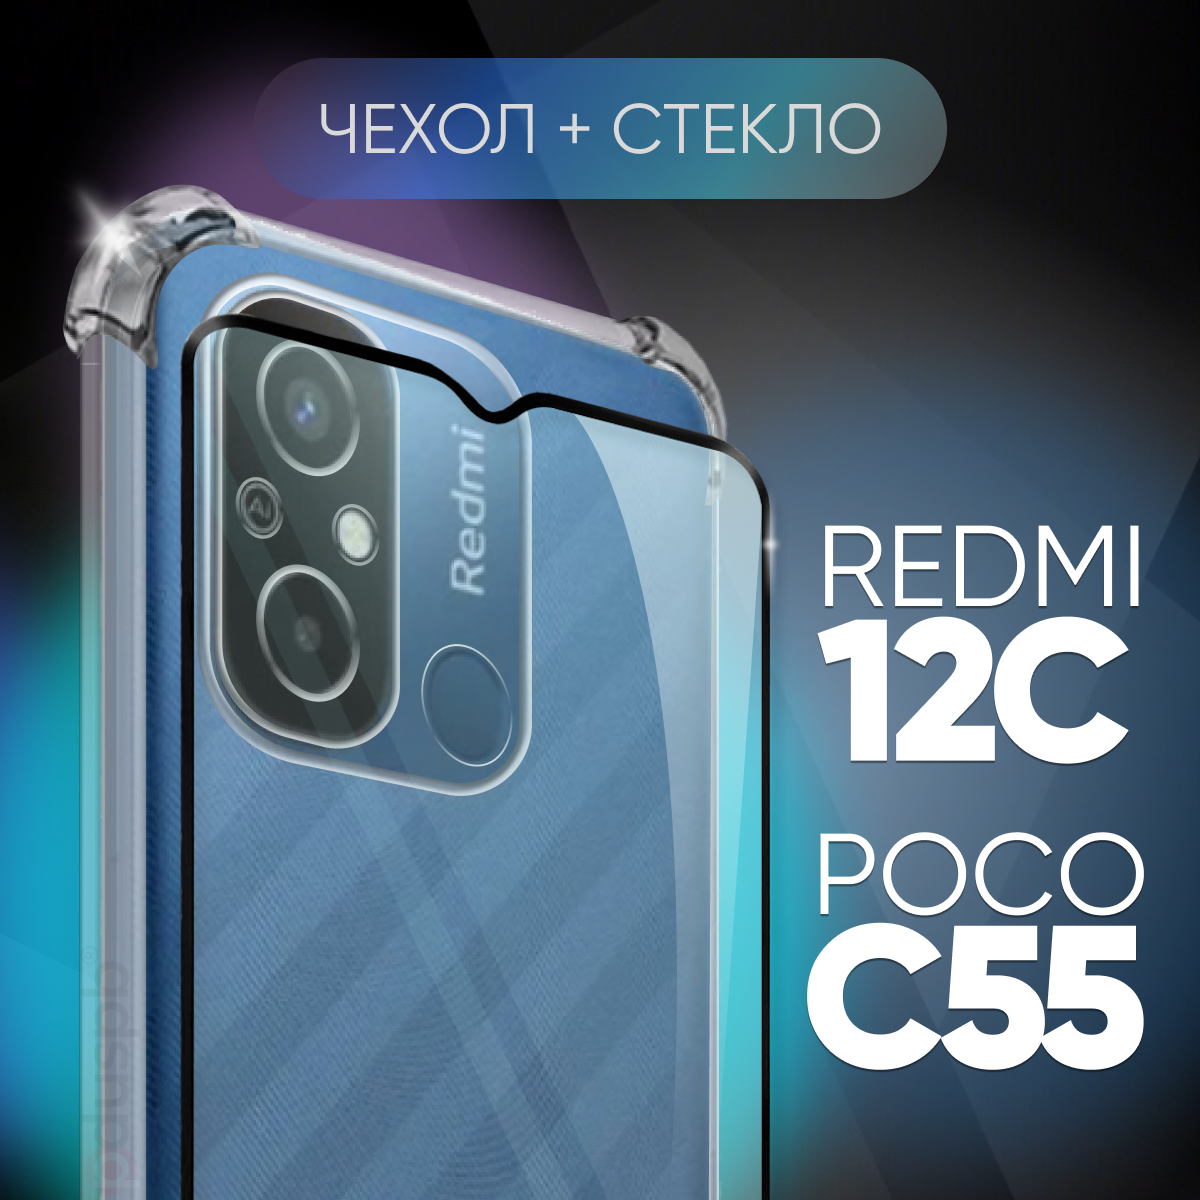 Комплект 2 в 1: Чехол №03 + стекло на Redmi 12C / Poco C55 / противоударный прозрачный силиконовый клип-кейс с защитой камеры и углов для Xiaomi Сяоми Ксиоми чехол на Редми 12с / Поко с55